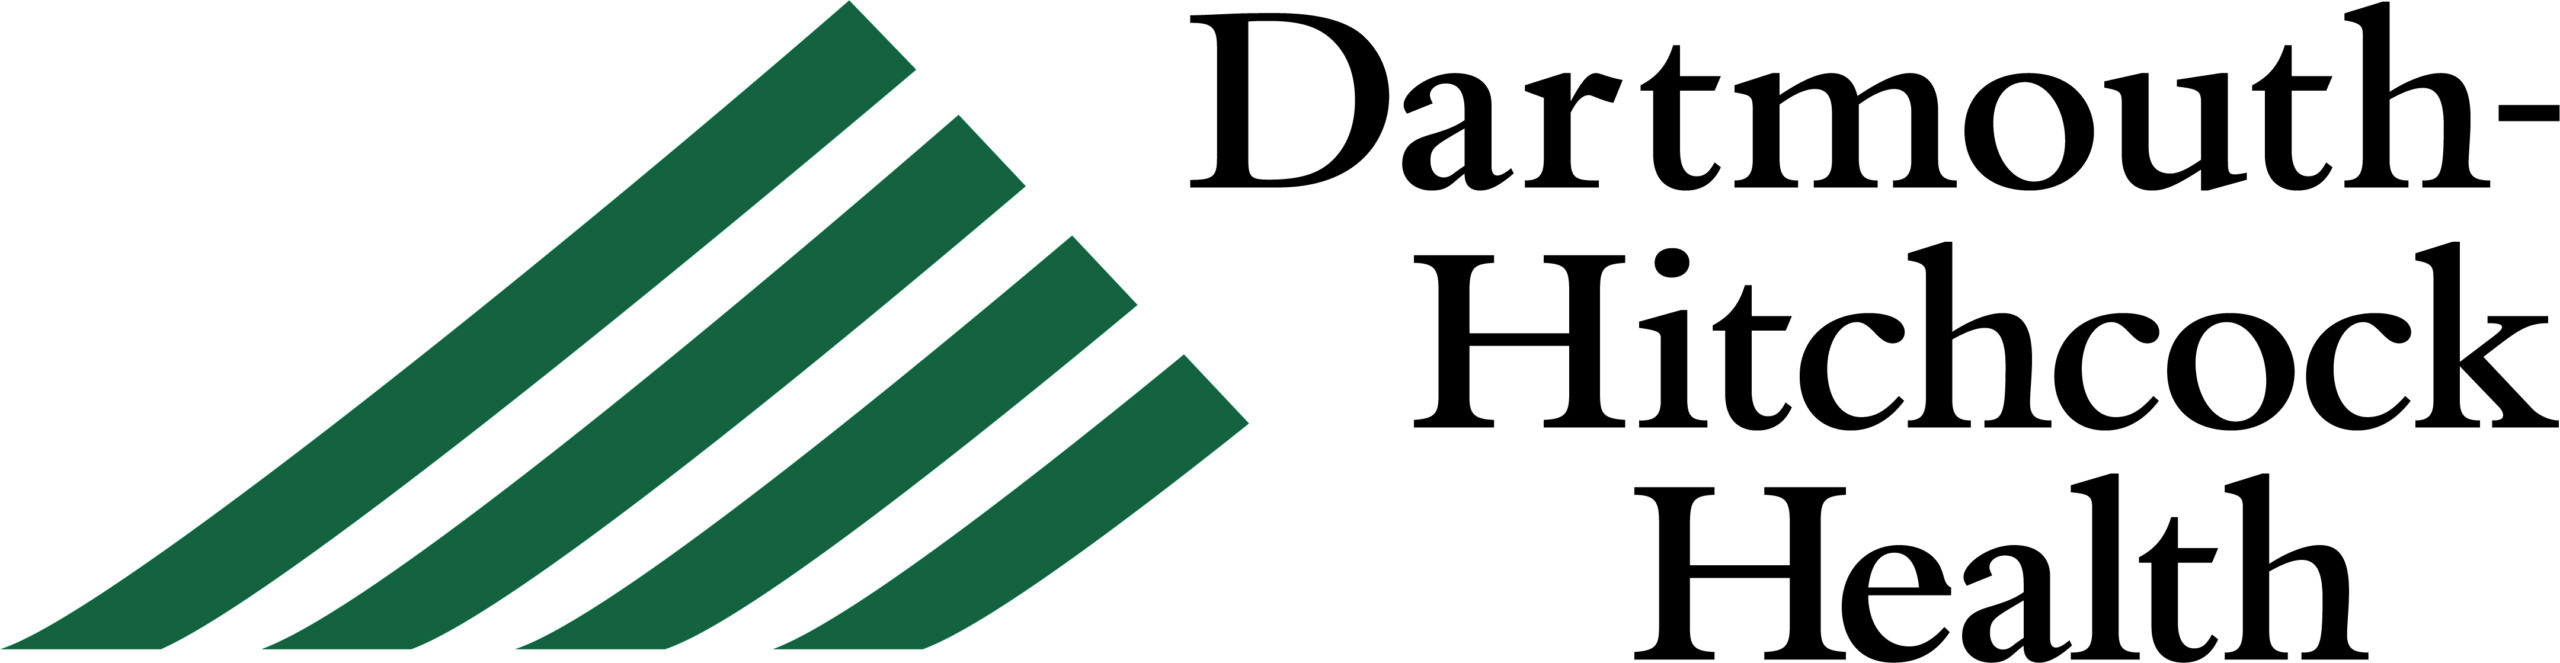 Dartmouth-Hitchcock Health - Logo